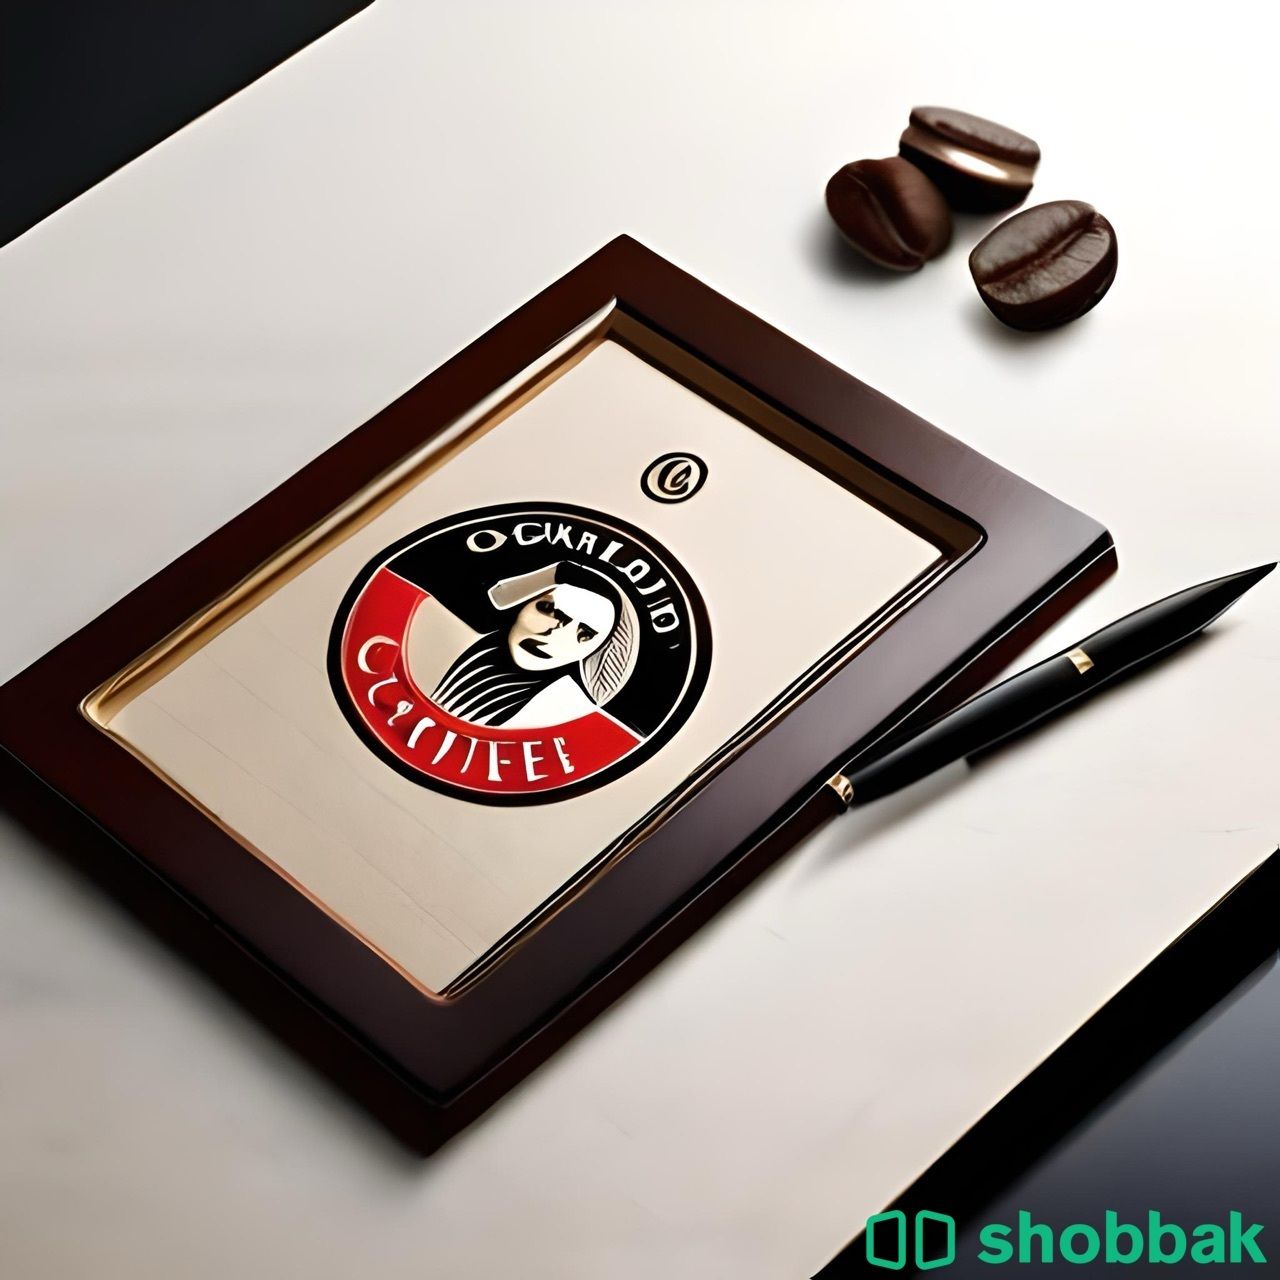 مصمم فديو - صور - اشعارات  Shobbak Saudi Arabia